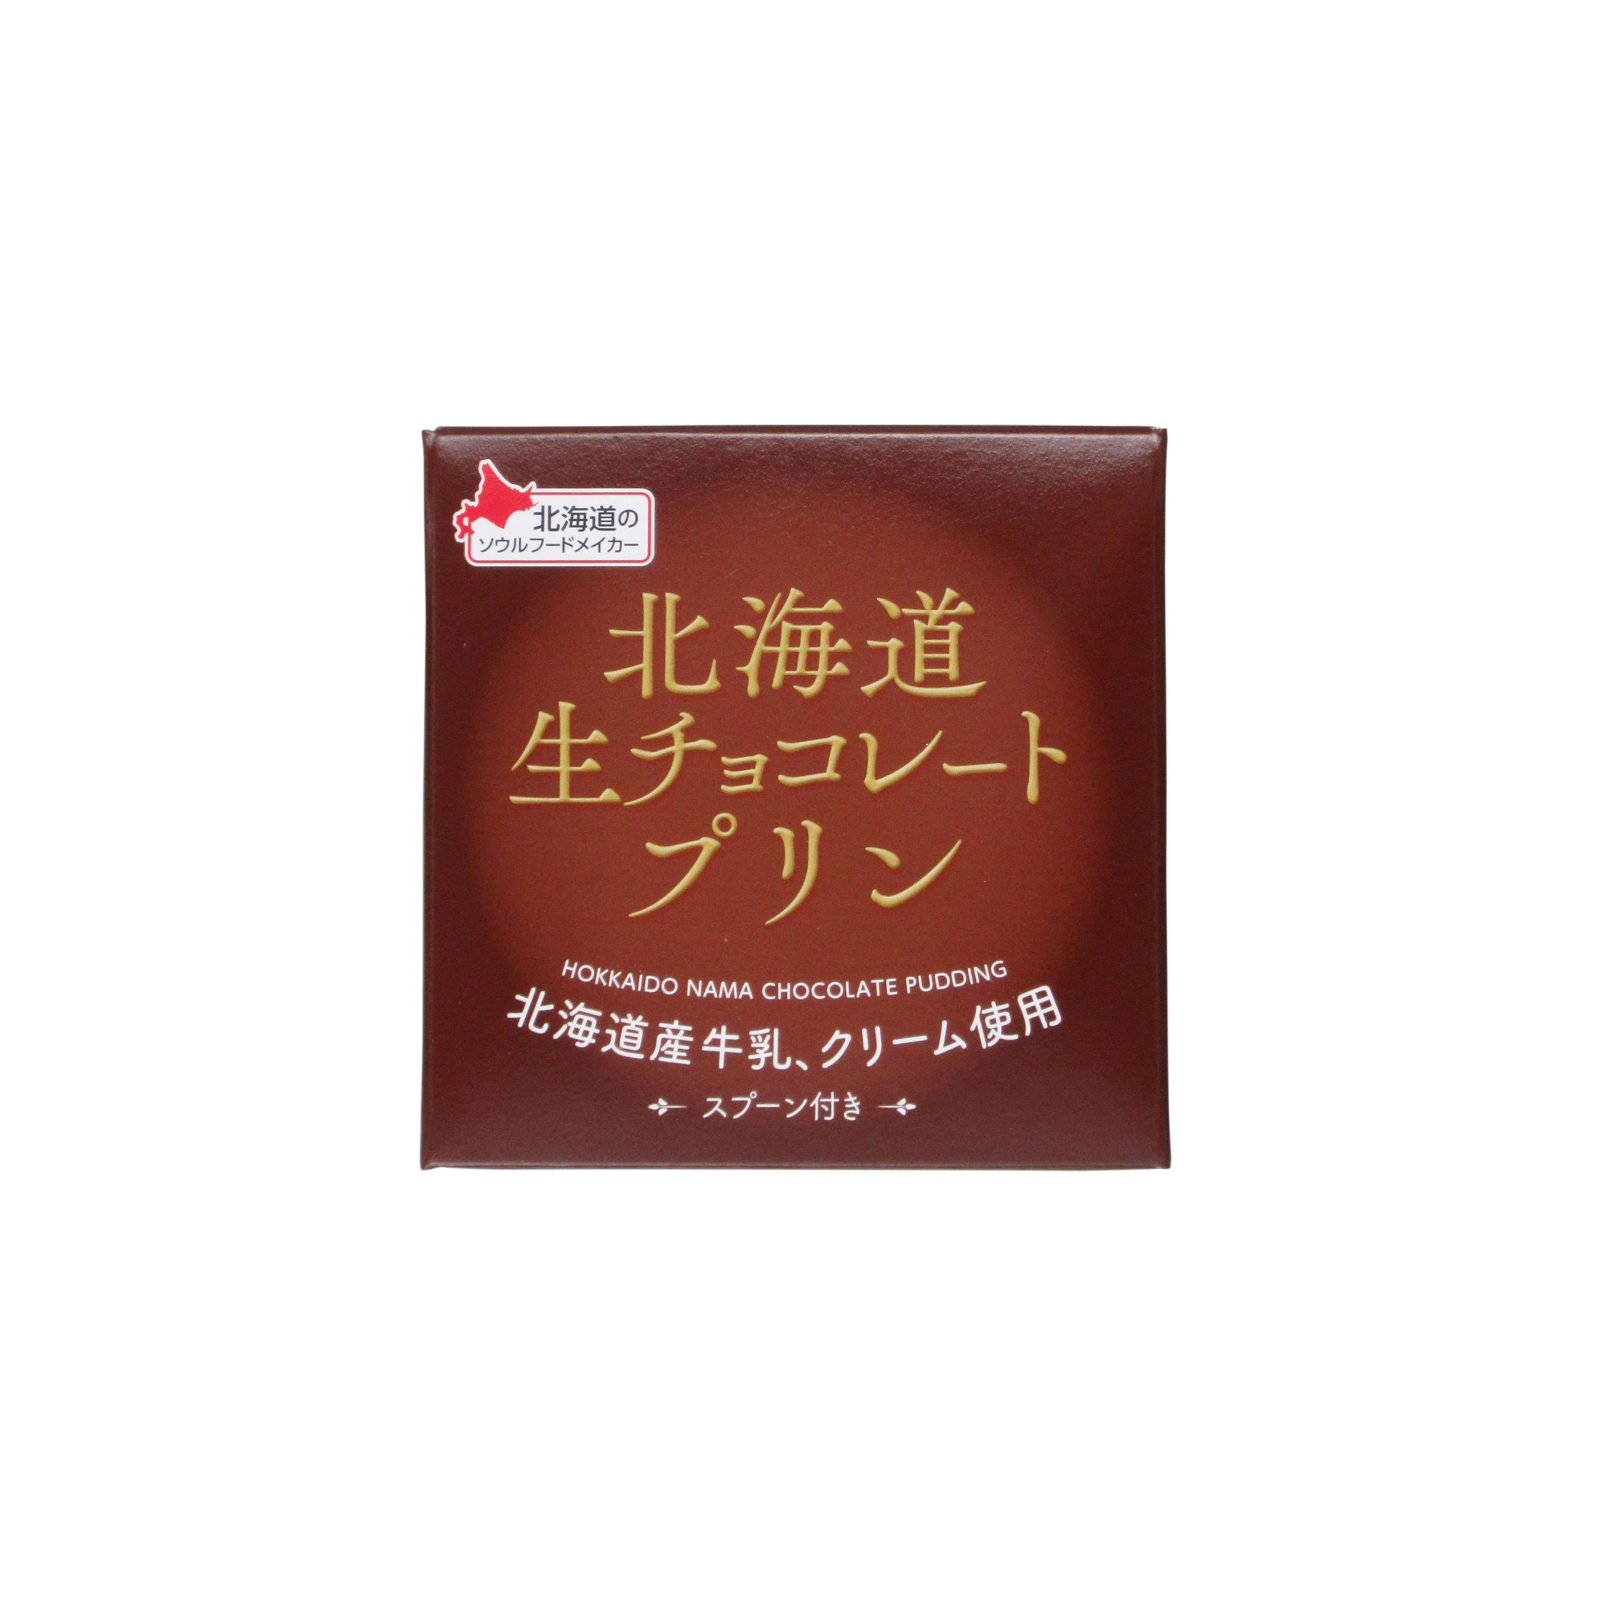 【製造終了】北海道生チョコレートプリン 1個入 78g